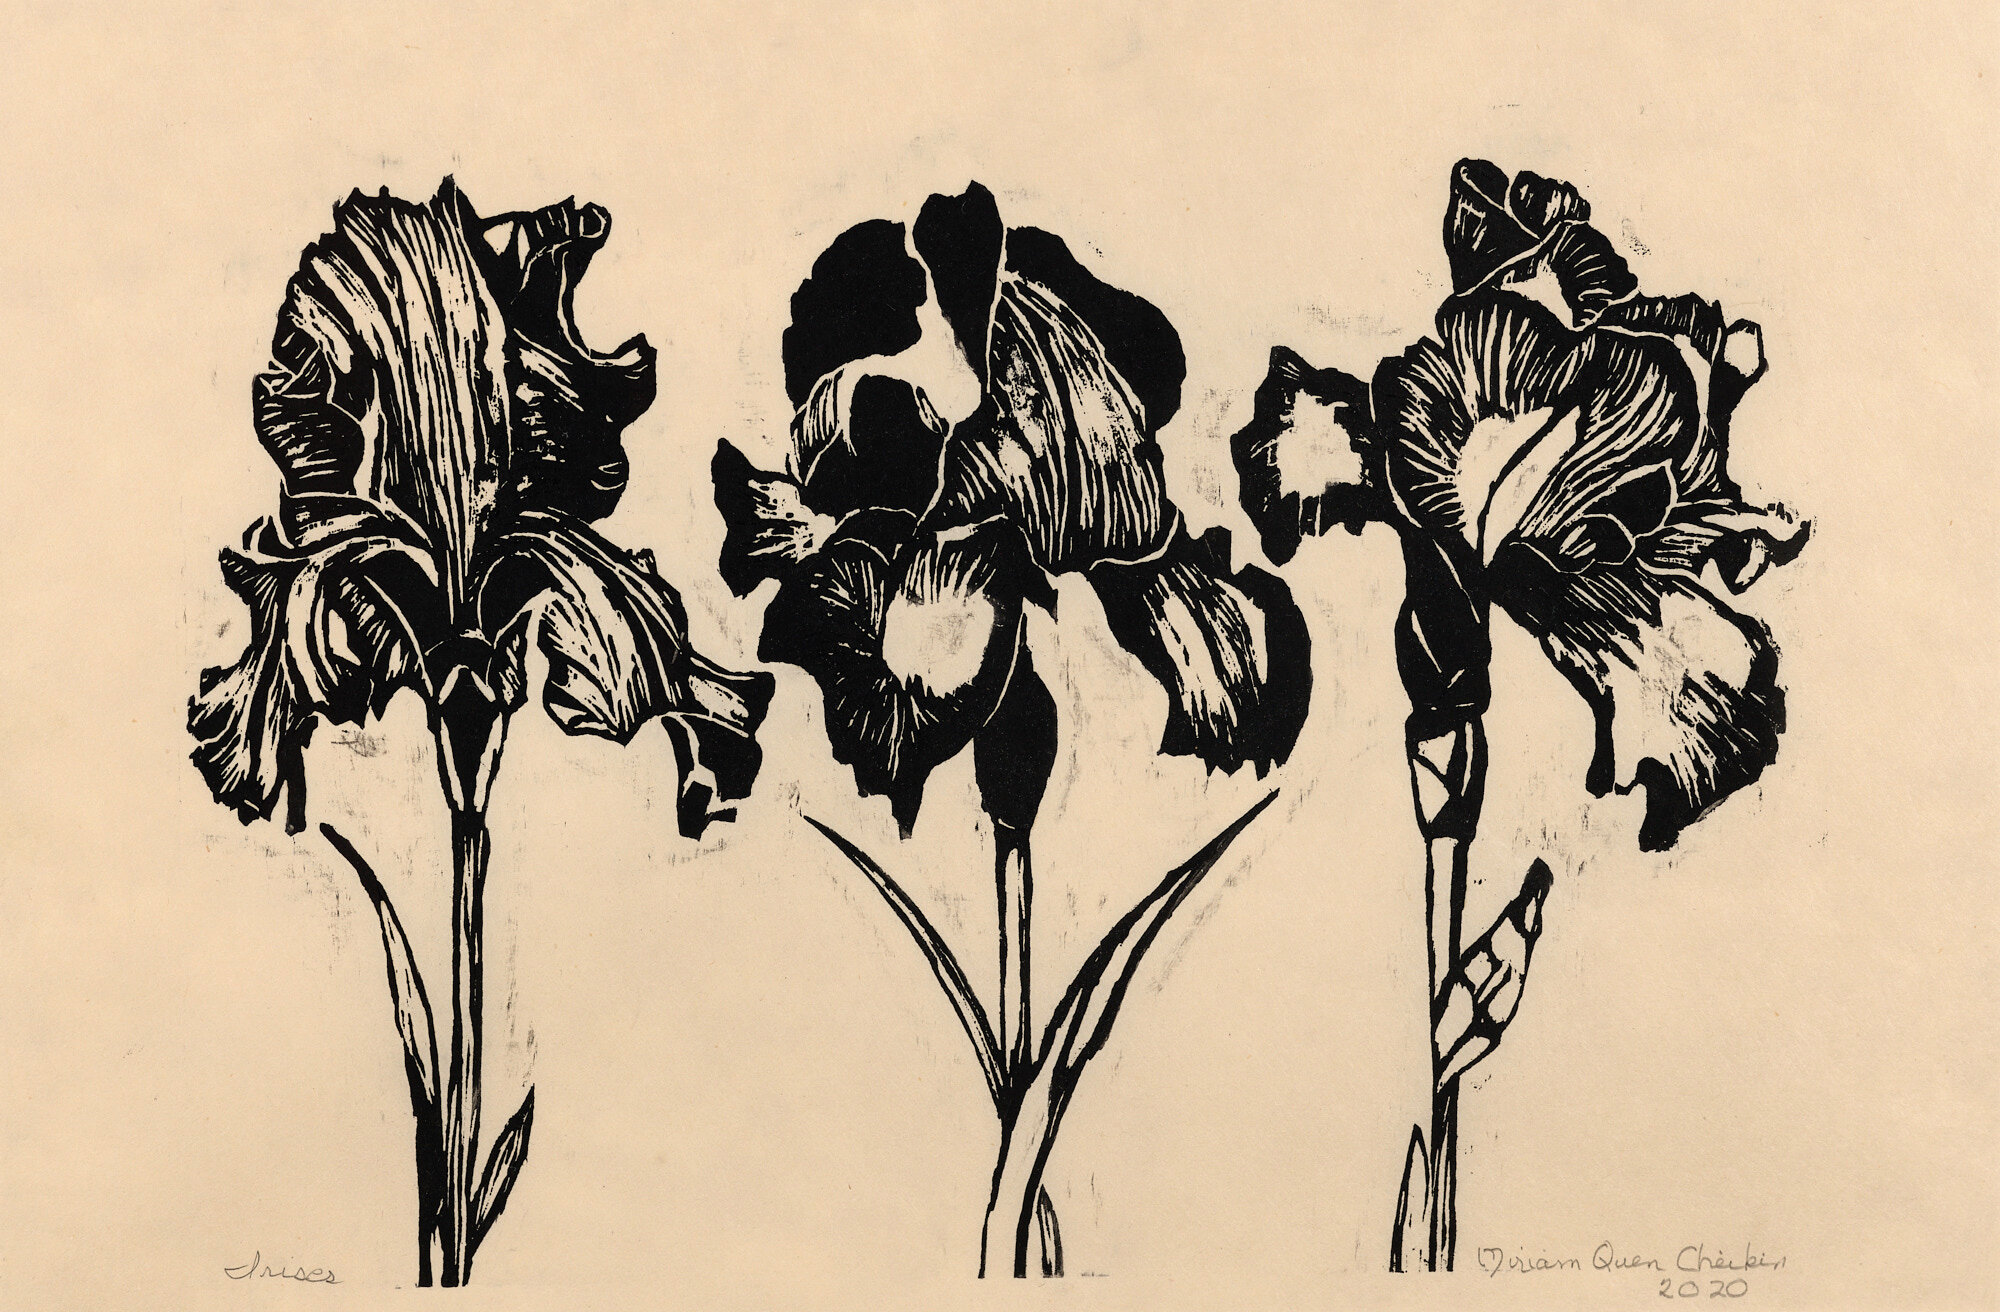  Miriam Quen Cheikin   Irises   Woodcut, 2020, 11 ¼” x 14 ¼”     